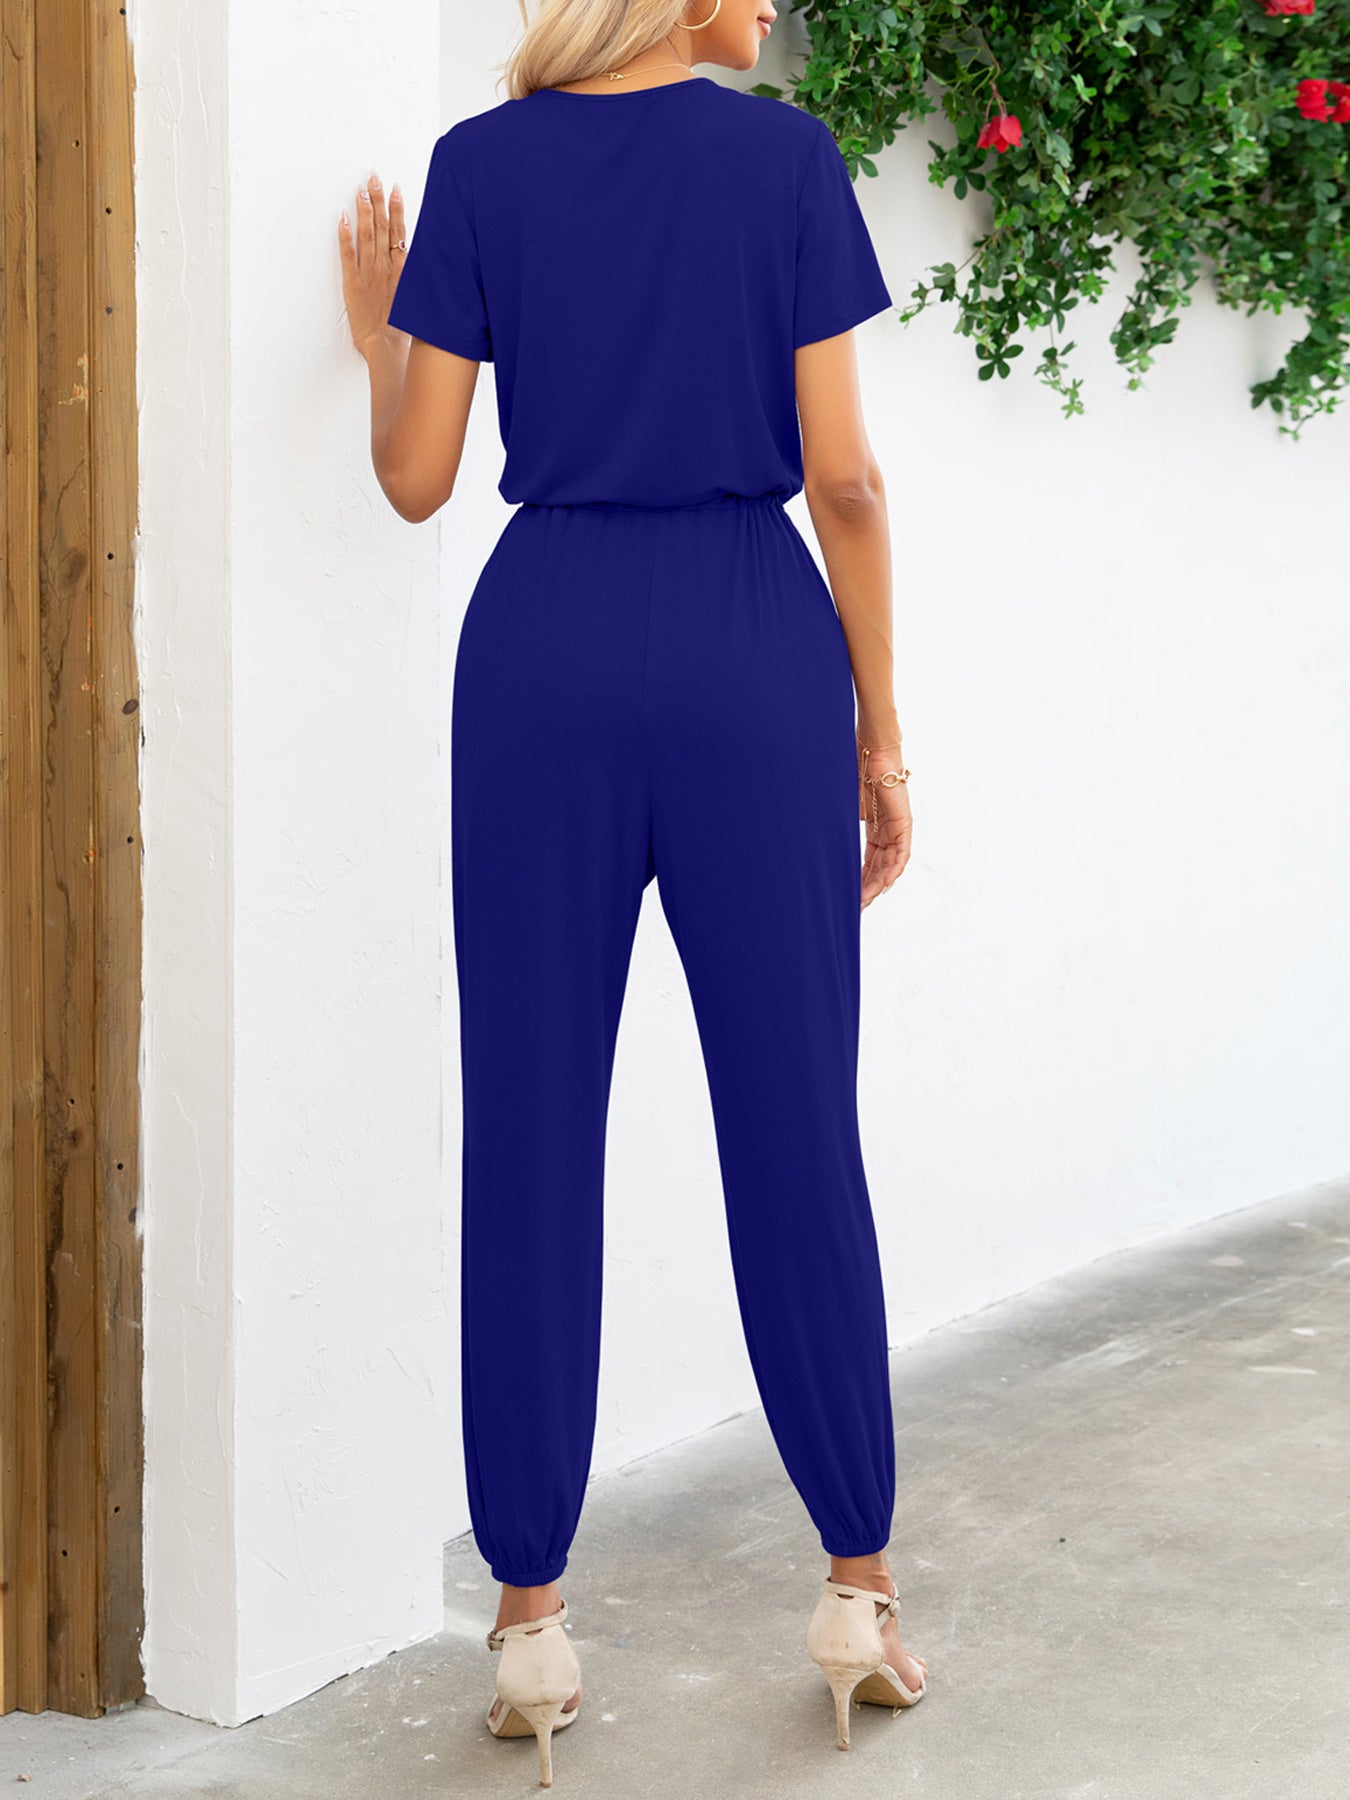 Short Sleeve V-Neck Jumpsuit with Pockets